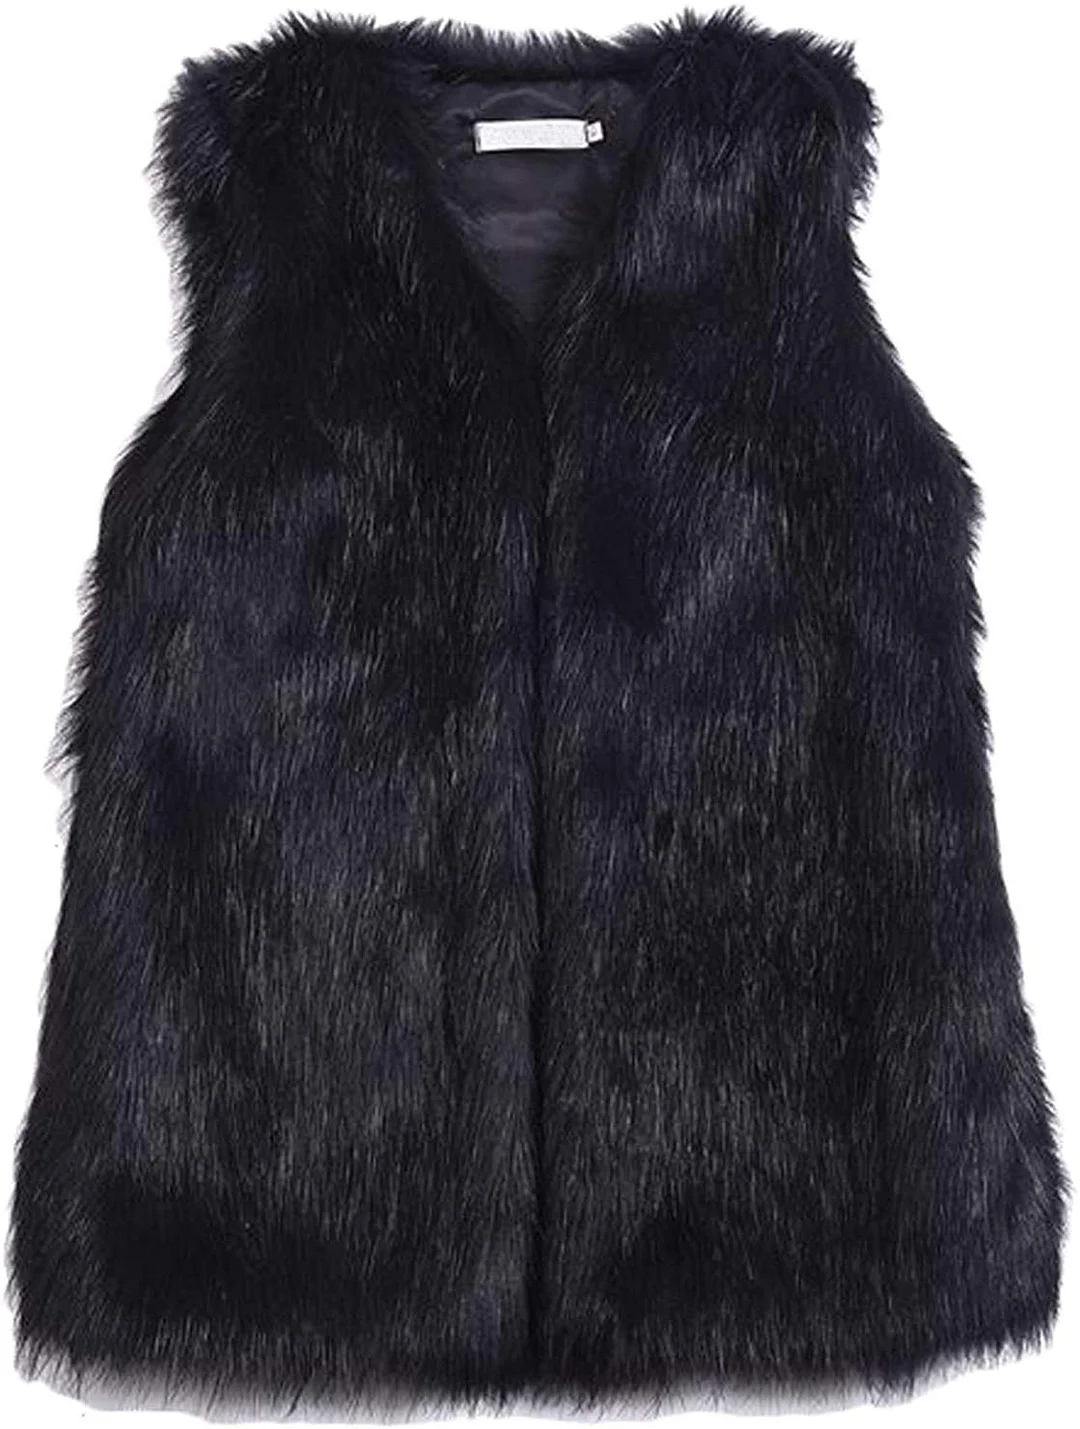 Women's Faux Fur Vest Coat Sleeveless Jacket